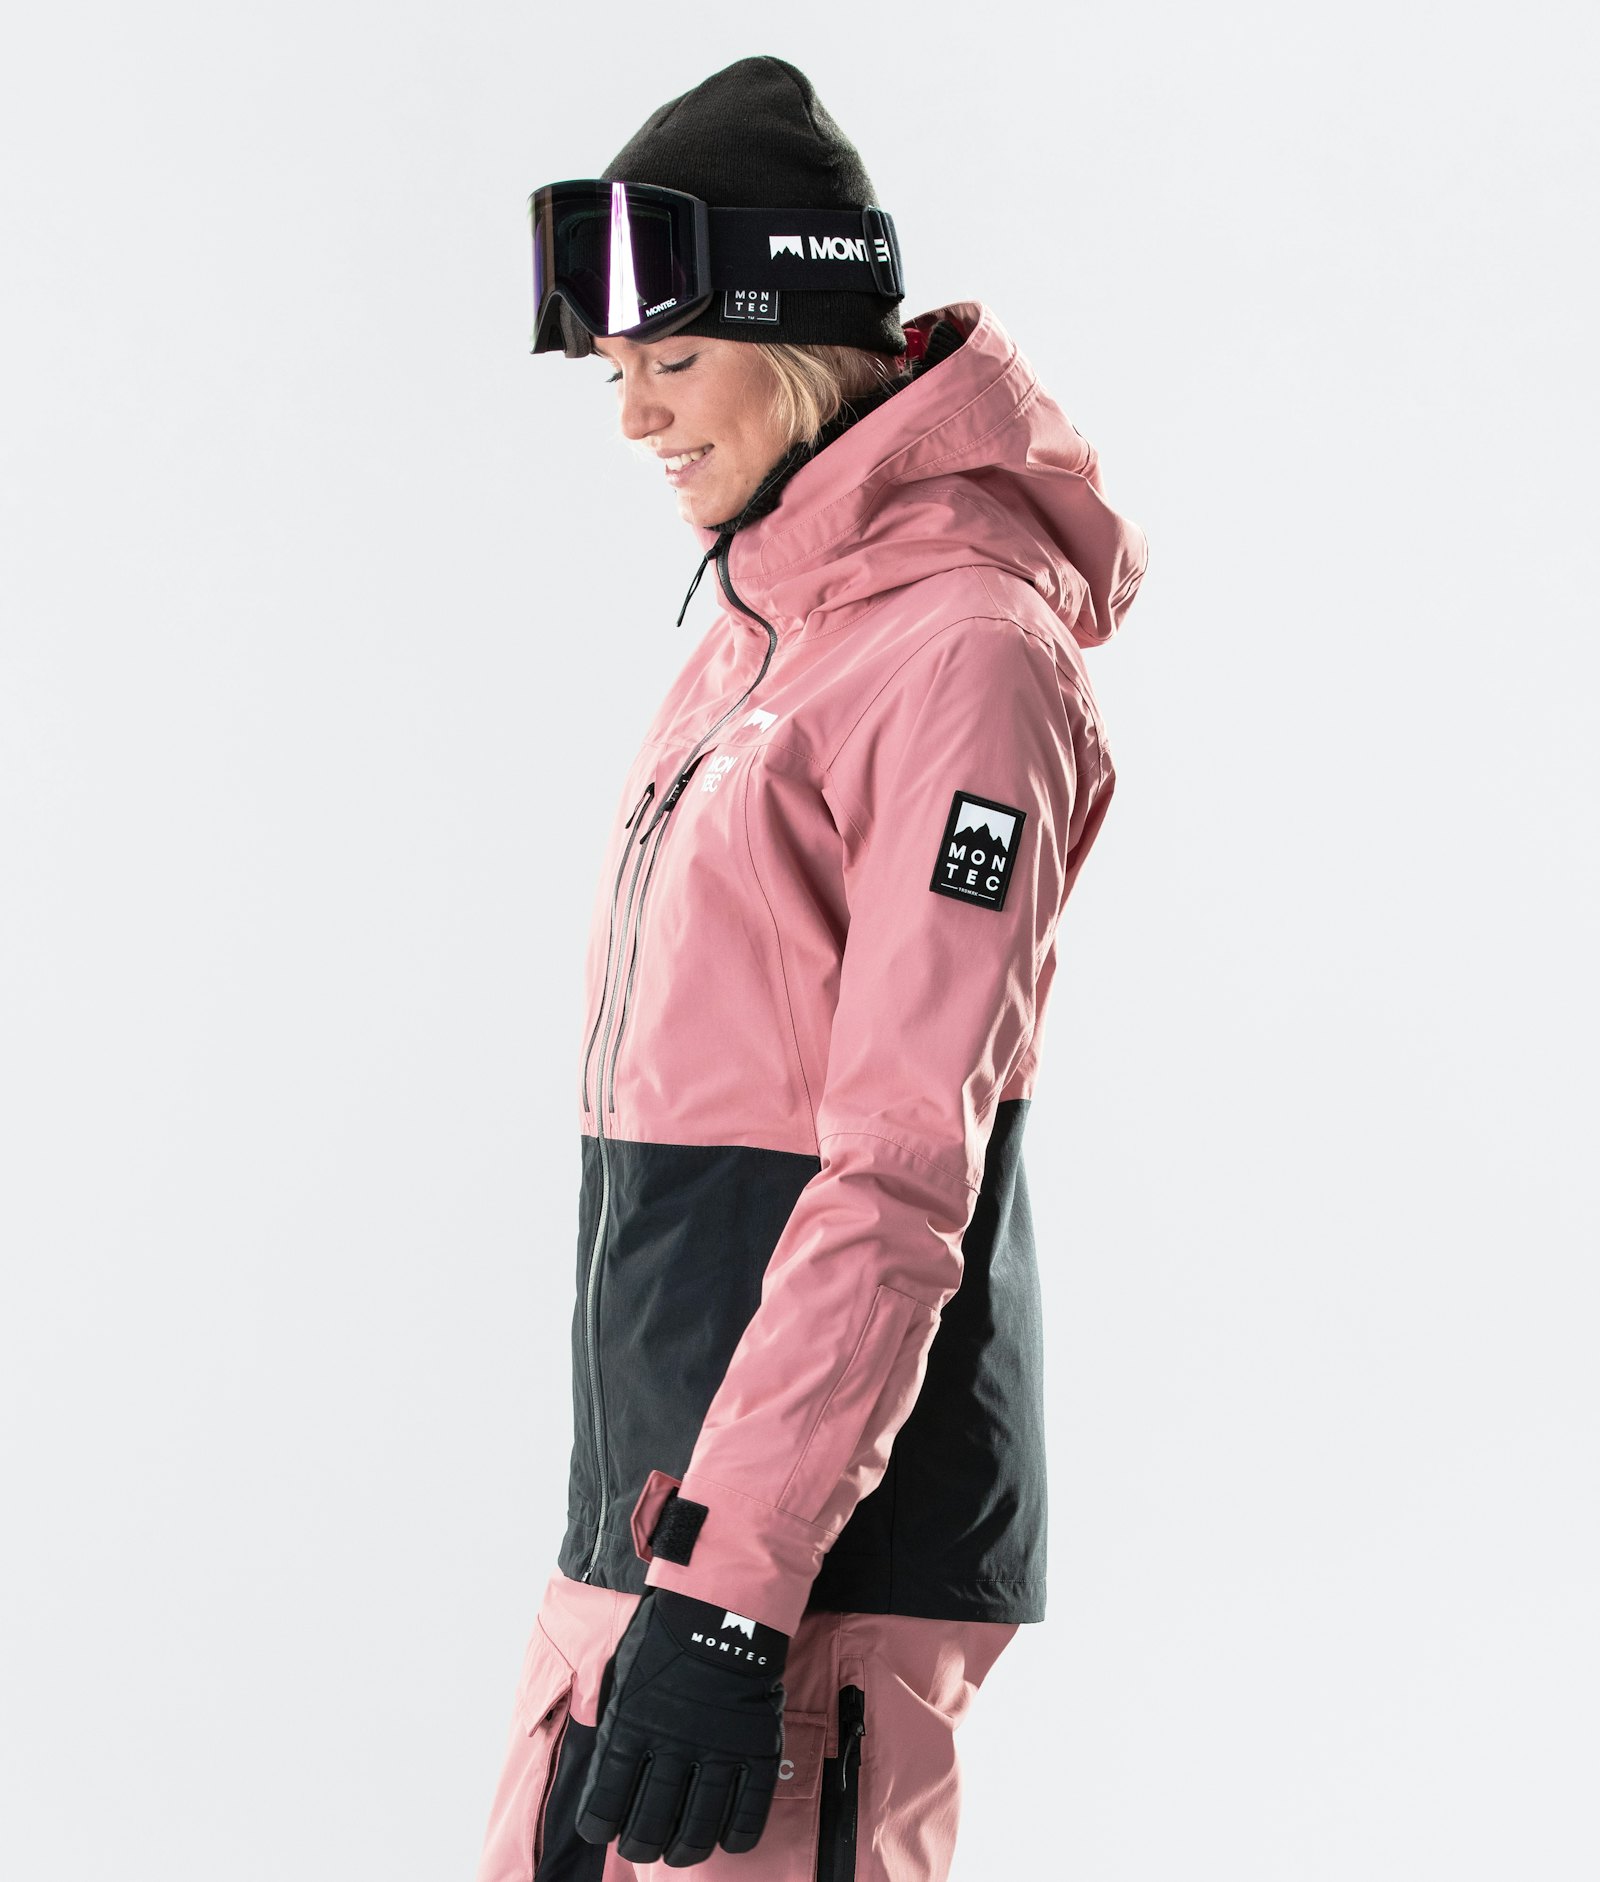 Moss W 2020 Snowboardjakke Dame Pink/Black